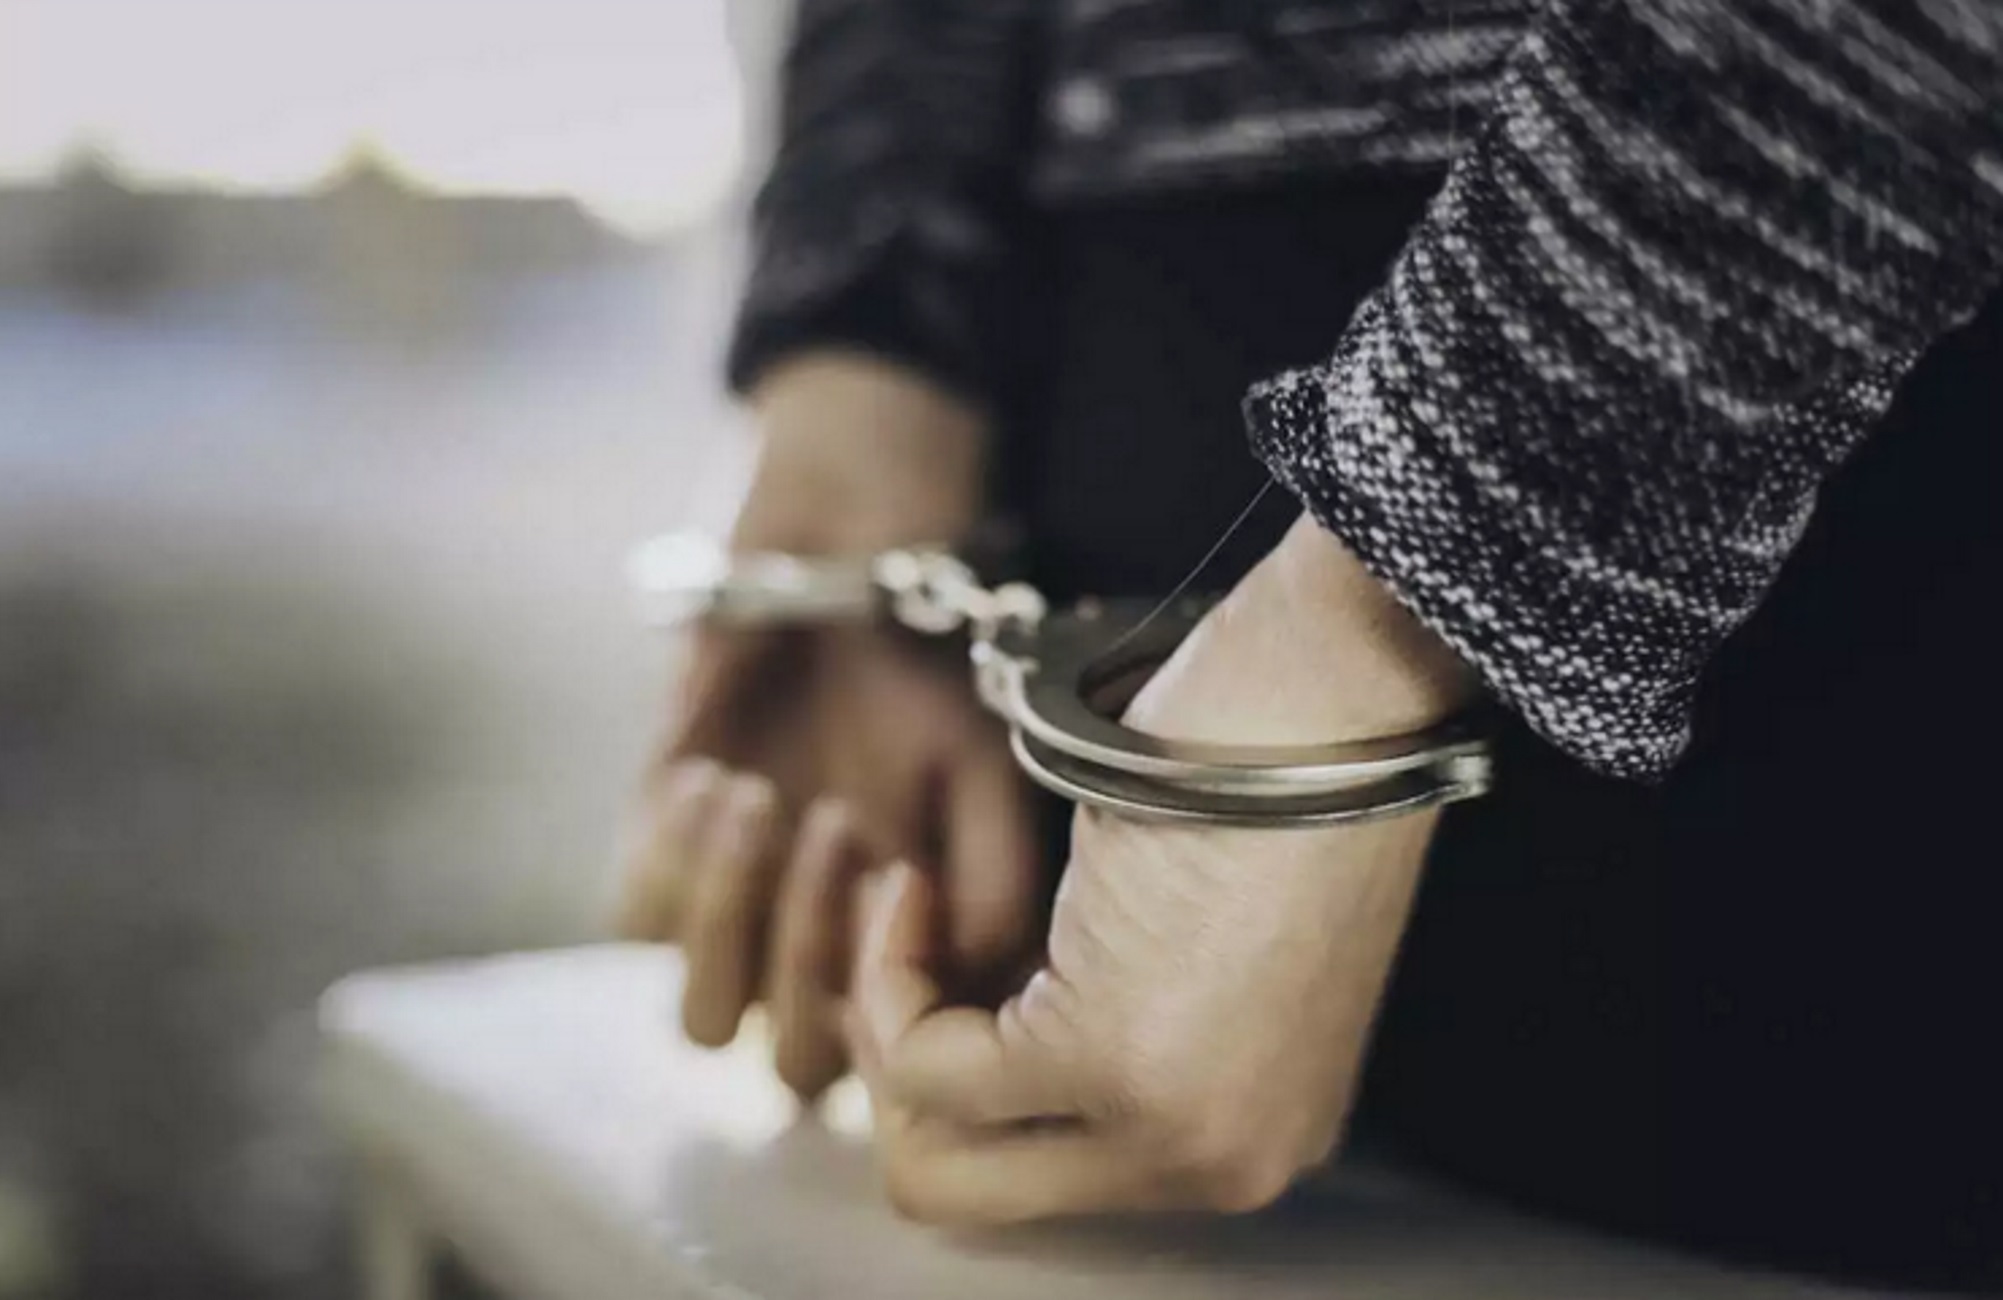 Έβρος: Συνελήφθη στα σύνορα άντρας σε βάρος του οποίου είχε εκδοθεί ευρωπαϊκό ένταλμα σύλληψης για απάτη